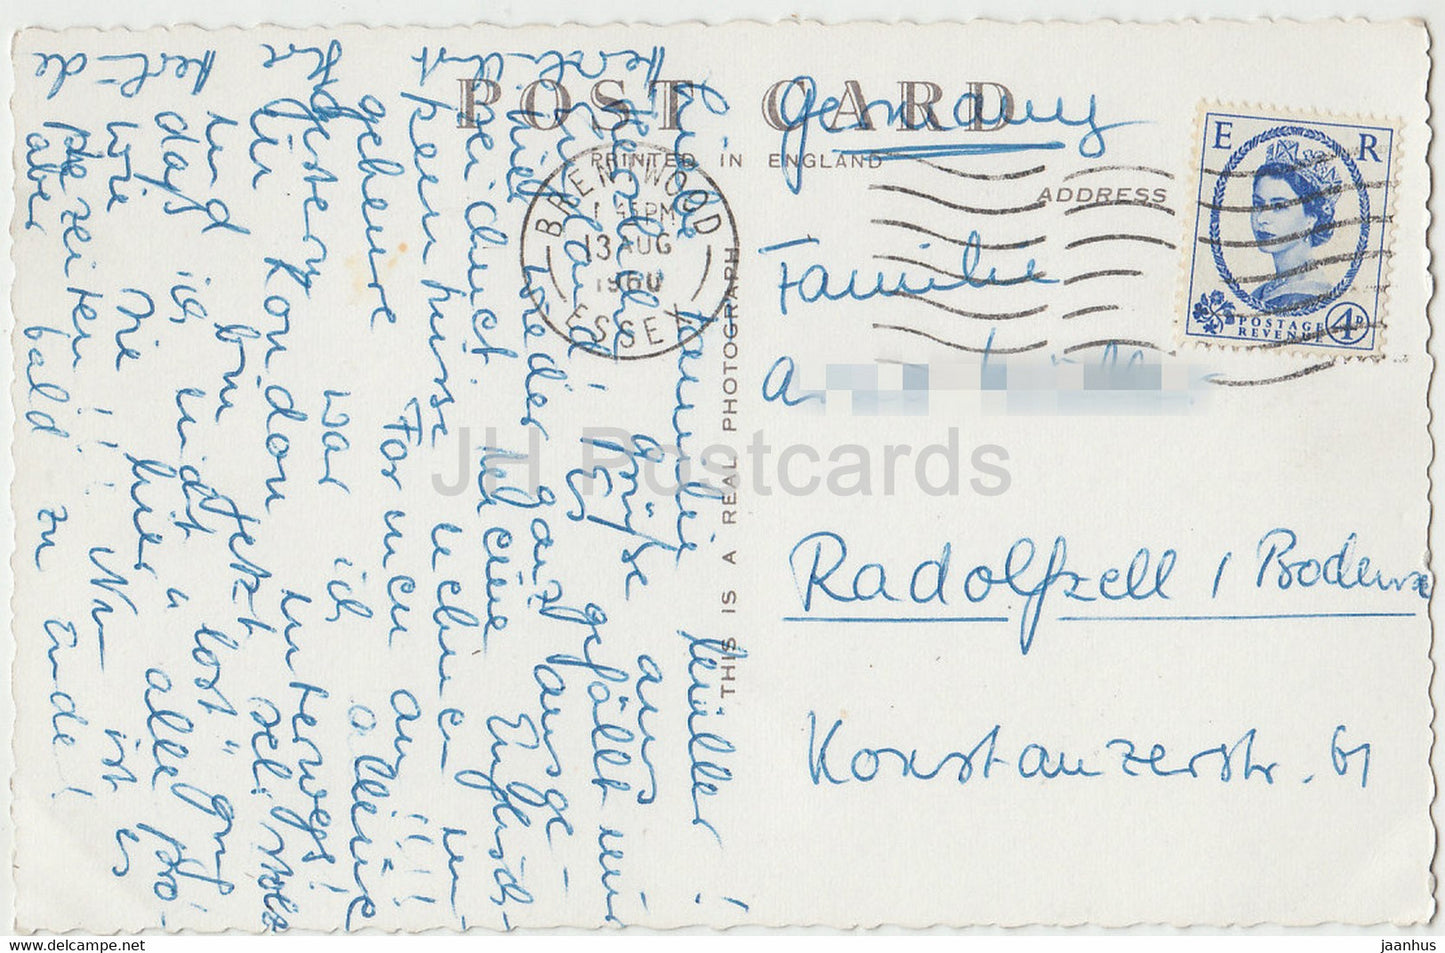 Londres - Cathédrale Saint-Paul - 2 A - carte postale ancienne - 1960 - Royaume-Uni - Angleterre - utilisé